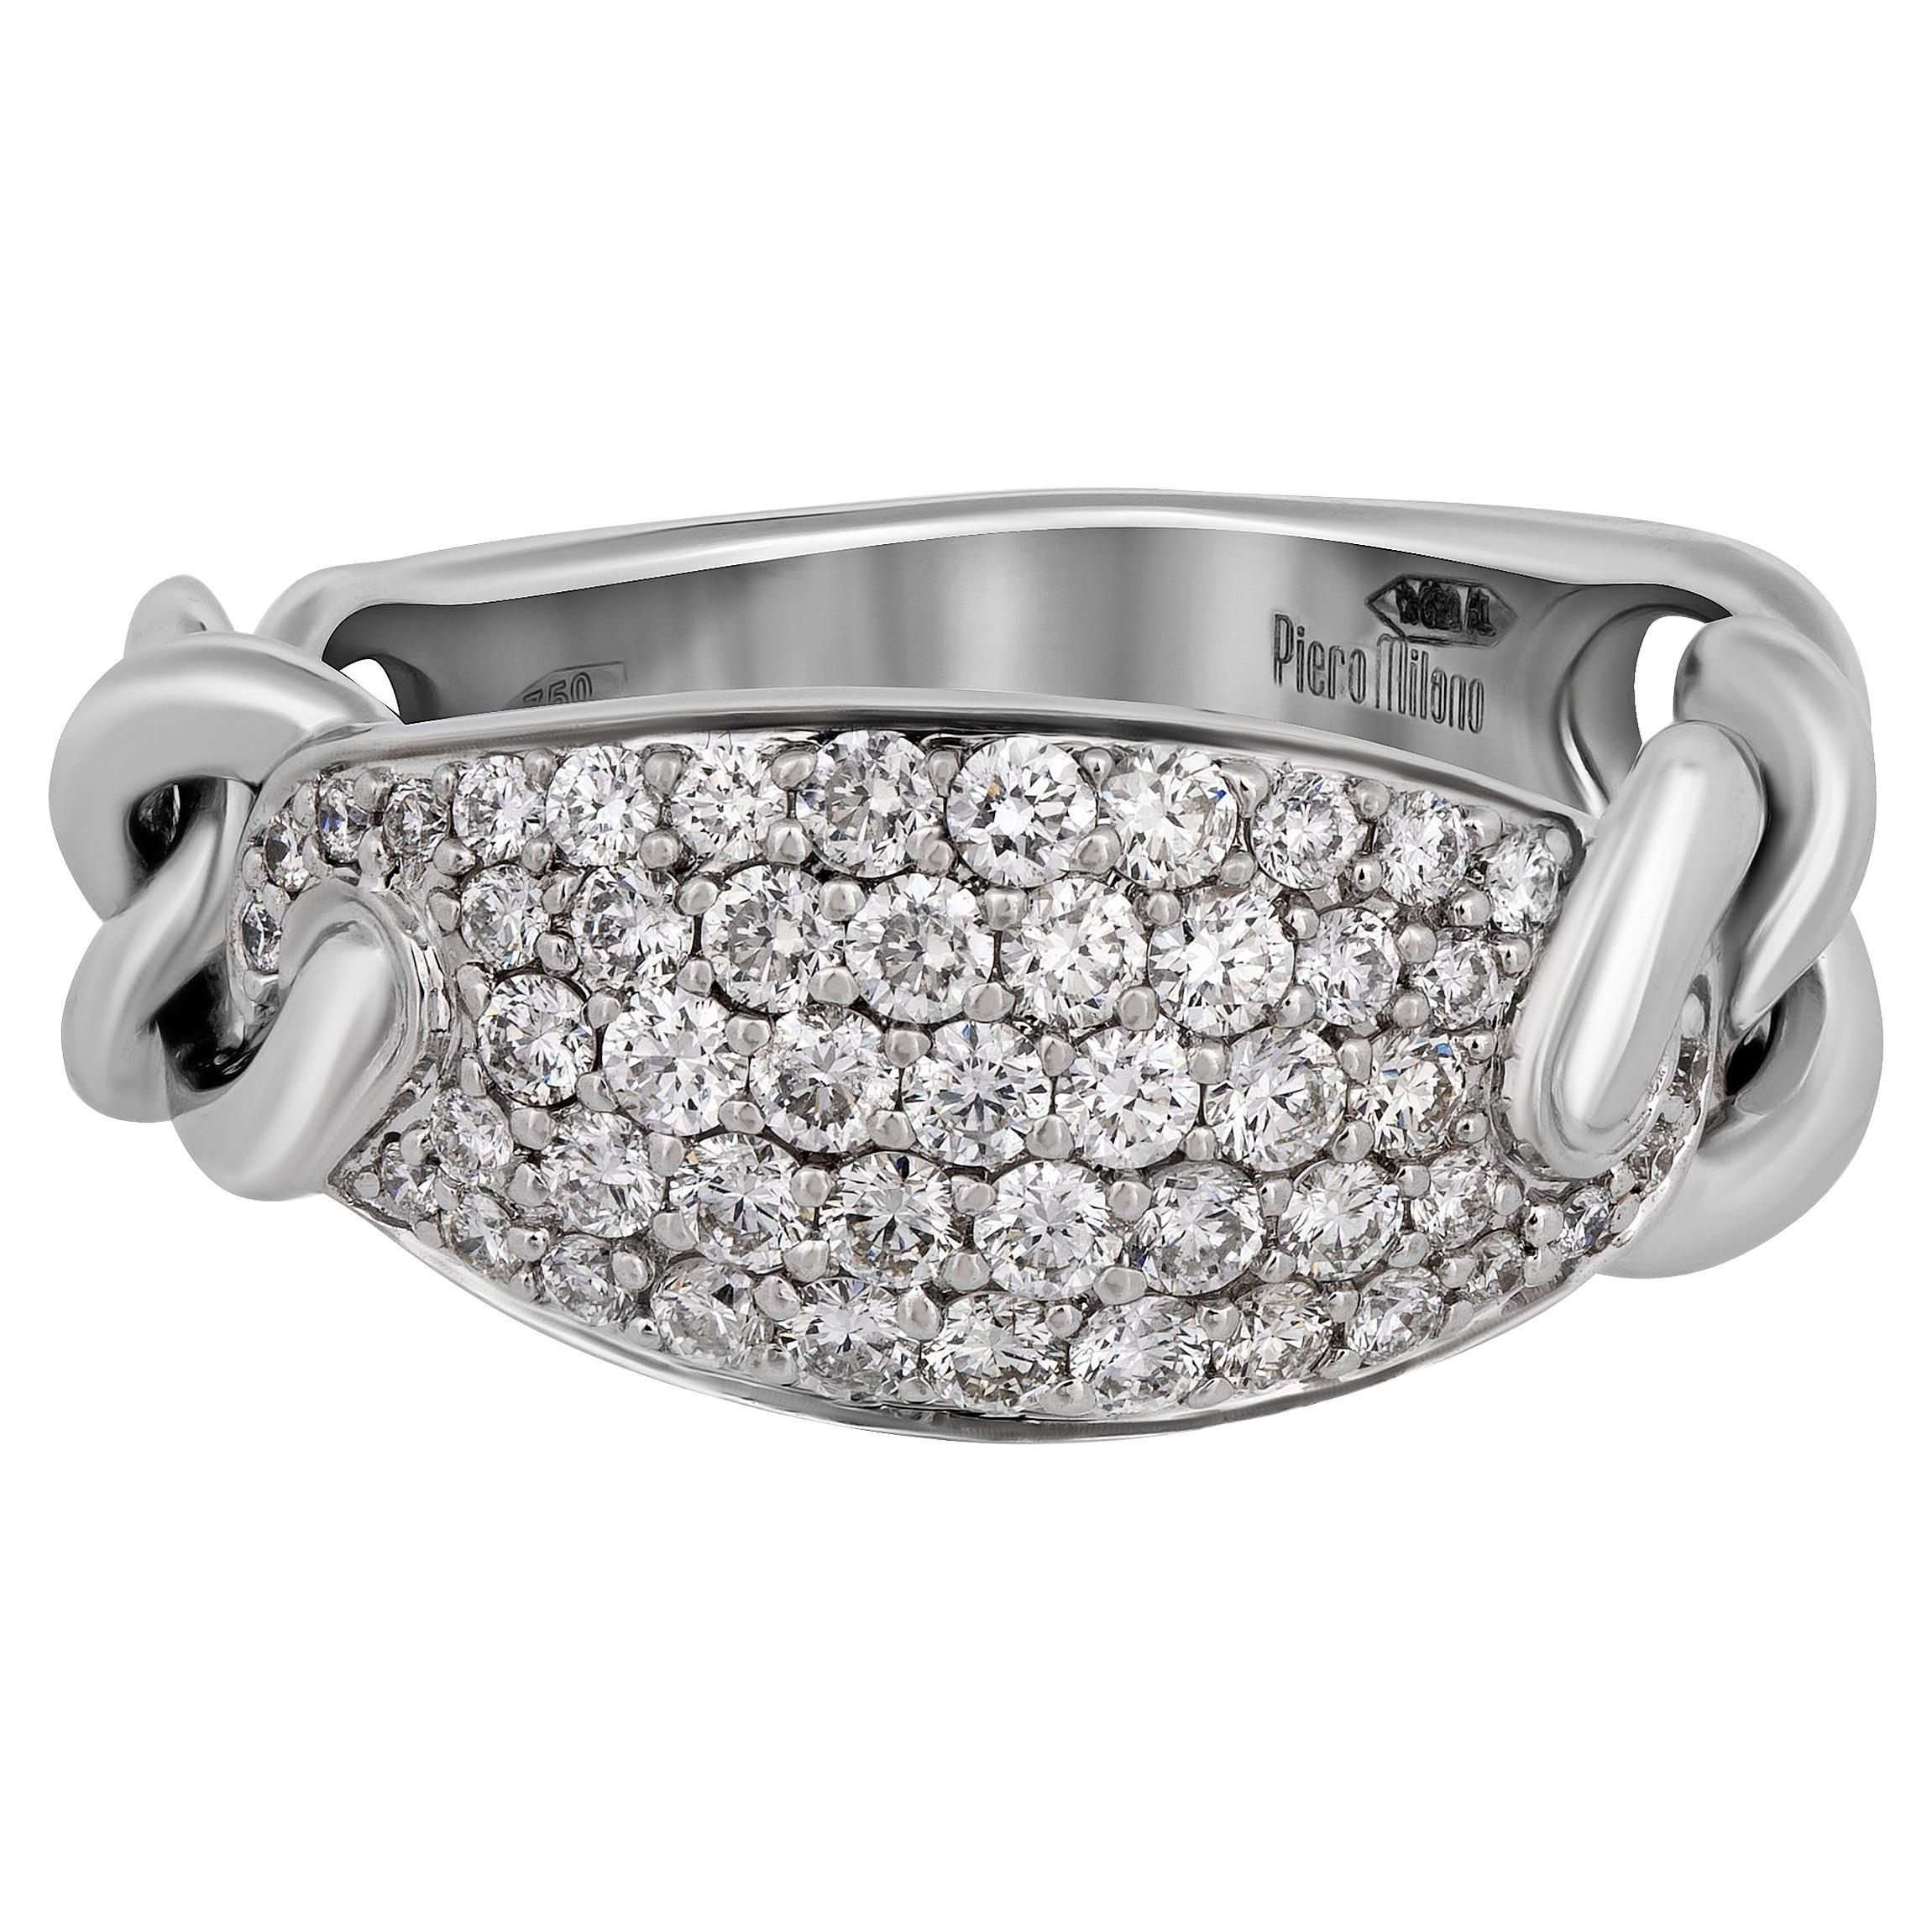 Piero Milano 18K White Gold Diamond Ring Sz 6.5 For Sale